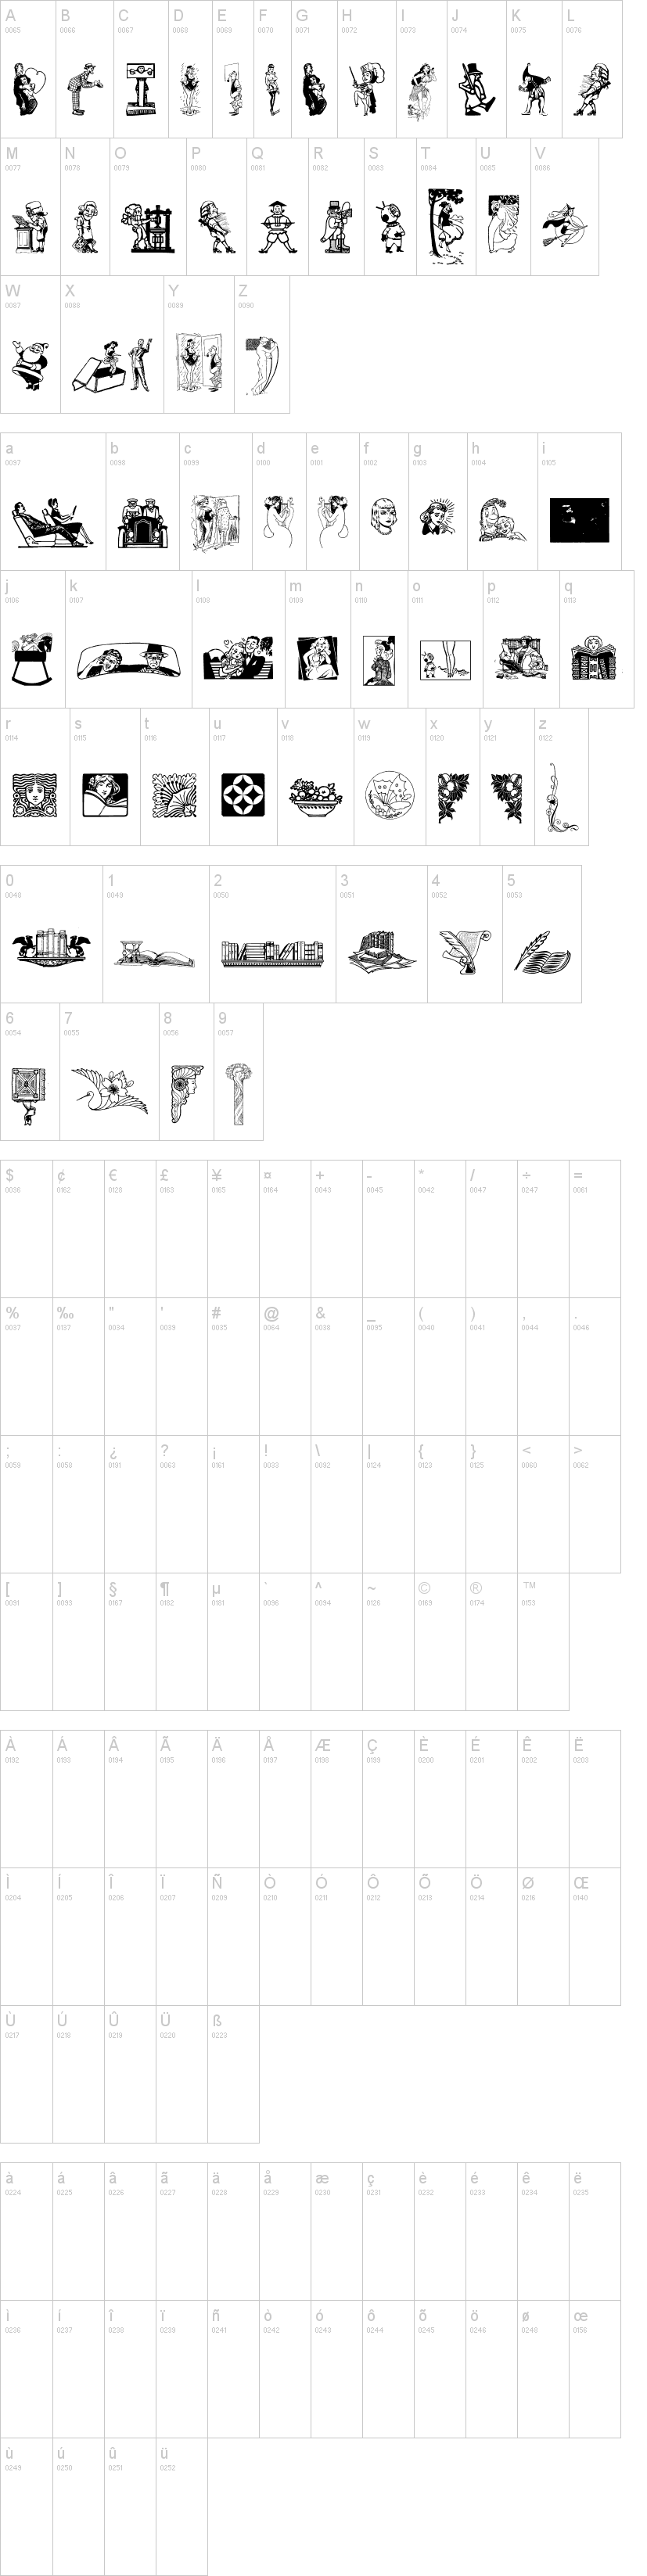 Cornucopia of Dingbats字符映射图